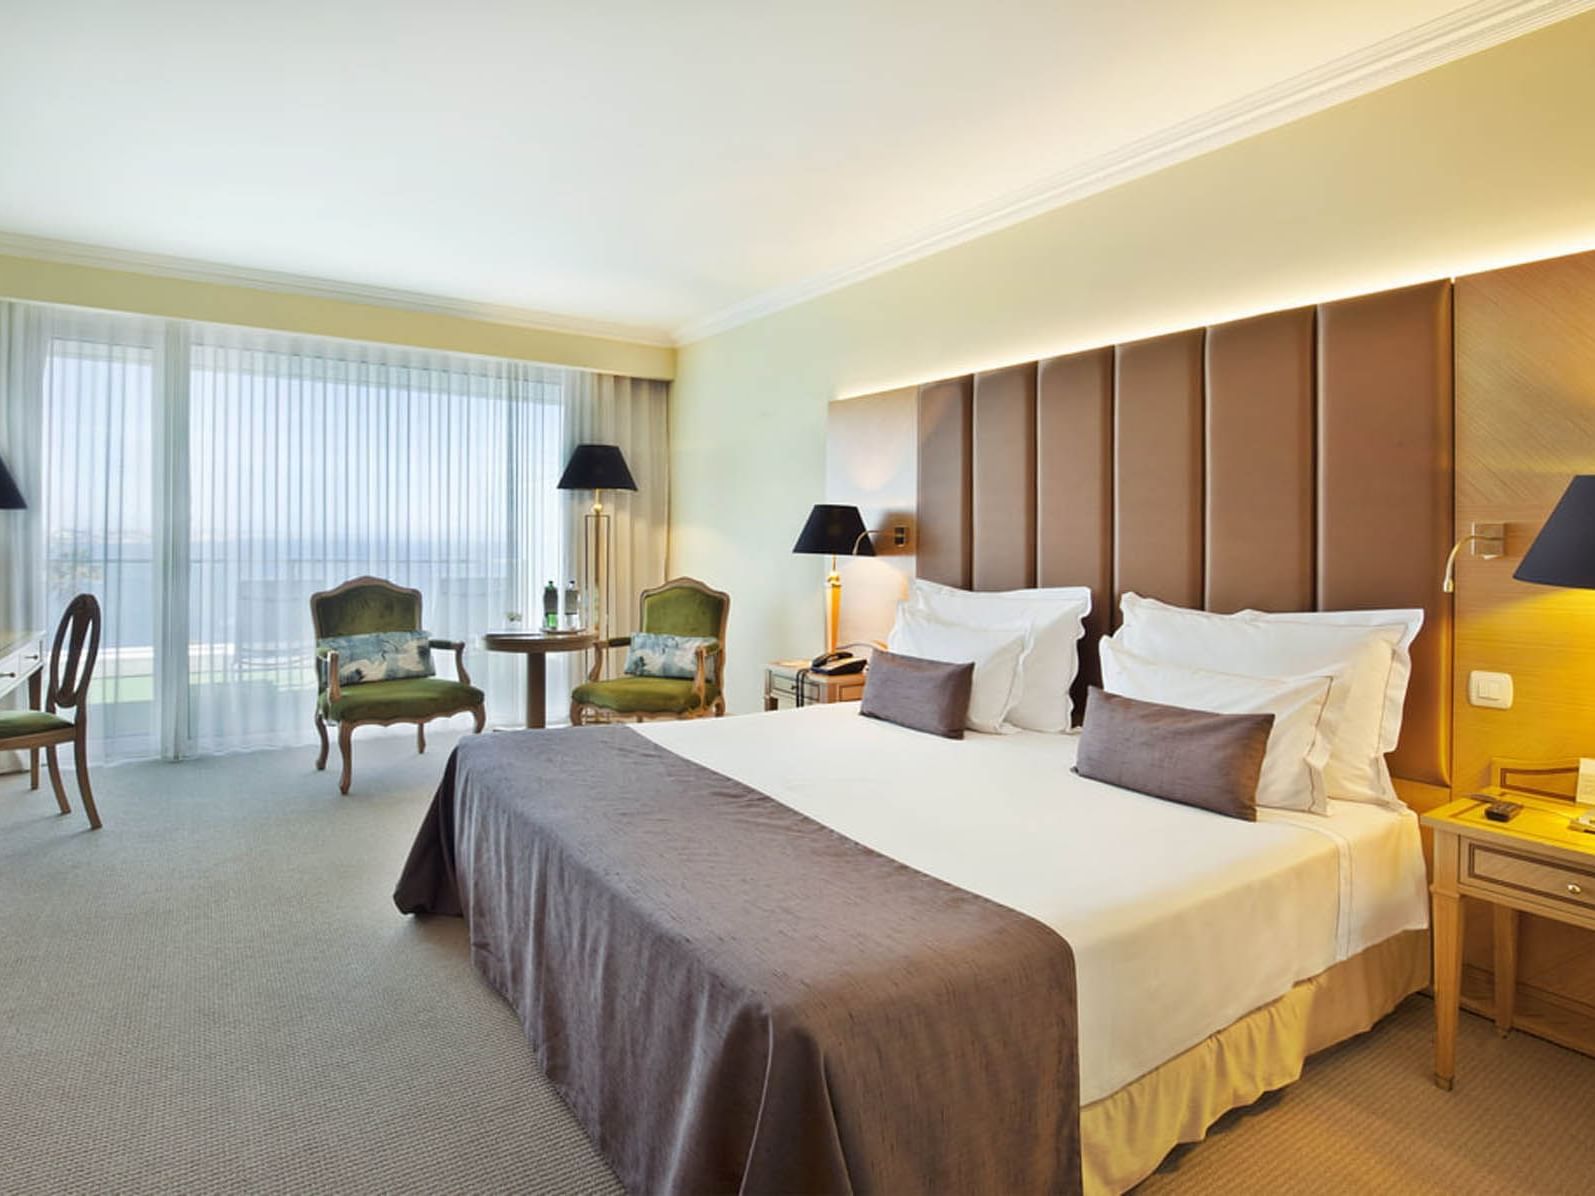 Cama king size numa suite tranquila - Hotel Cascais Miragem Health and Spa